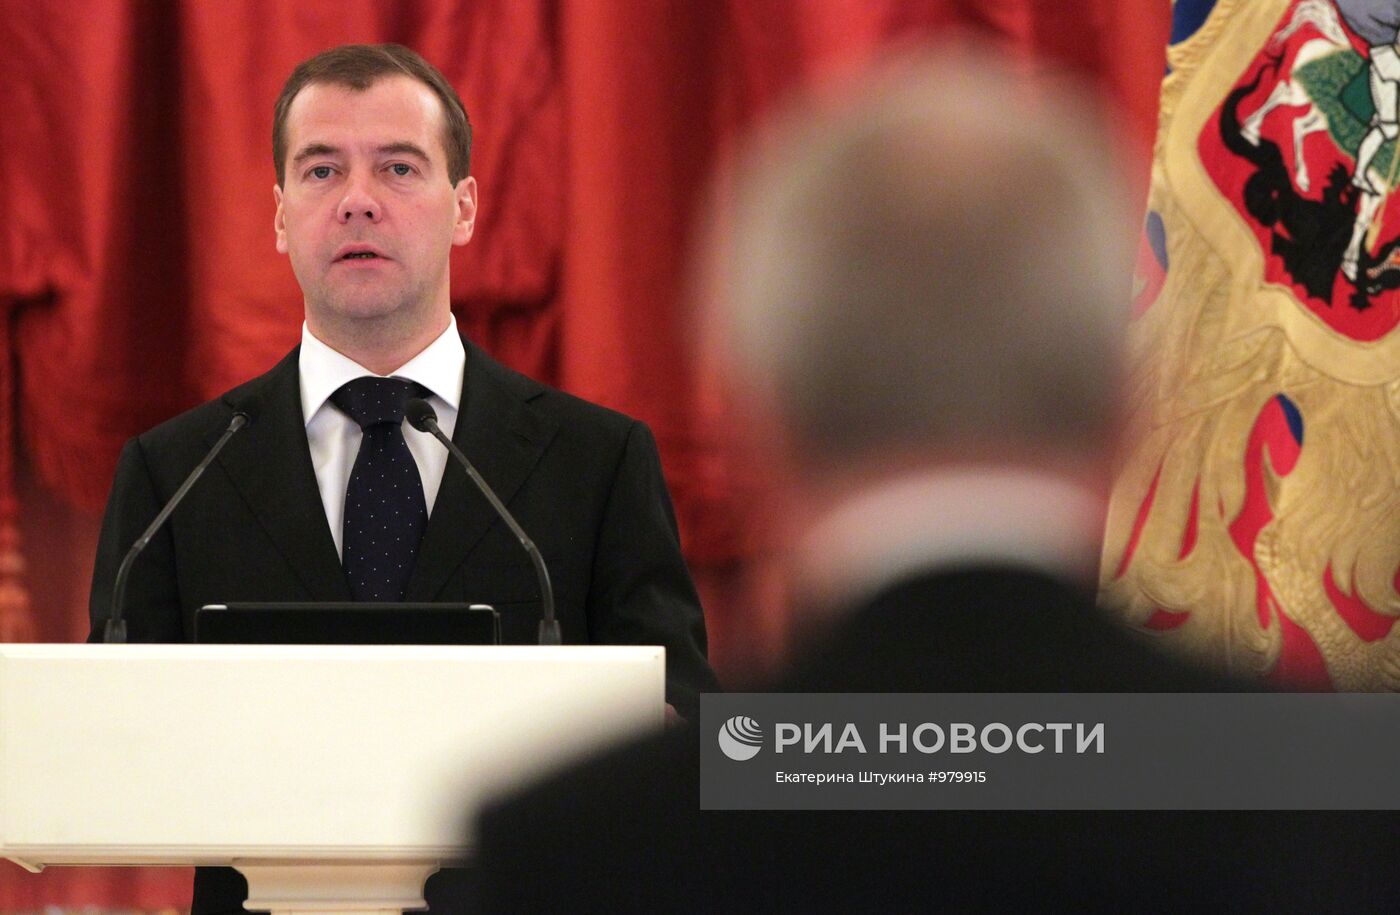 Д.Медведев провел заседание в честь 20-летия КС РФ